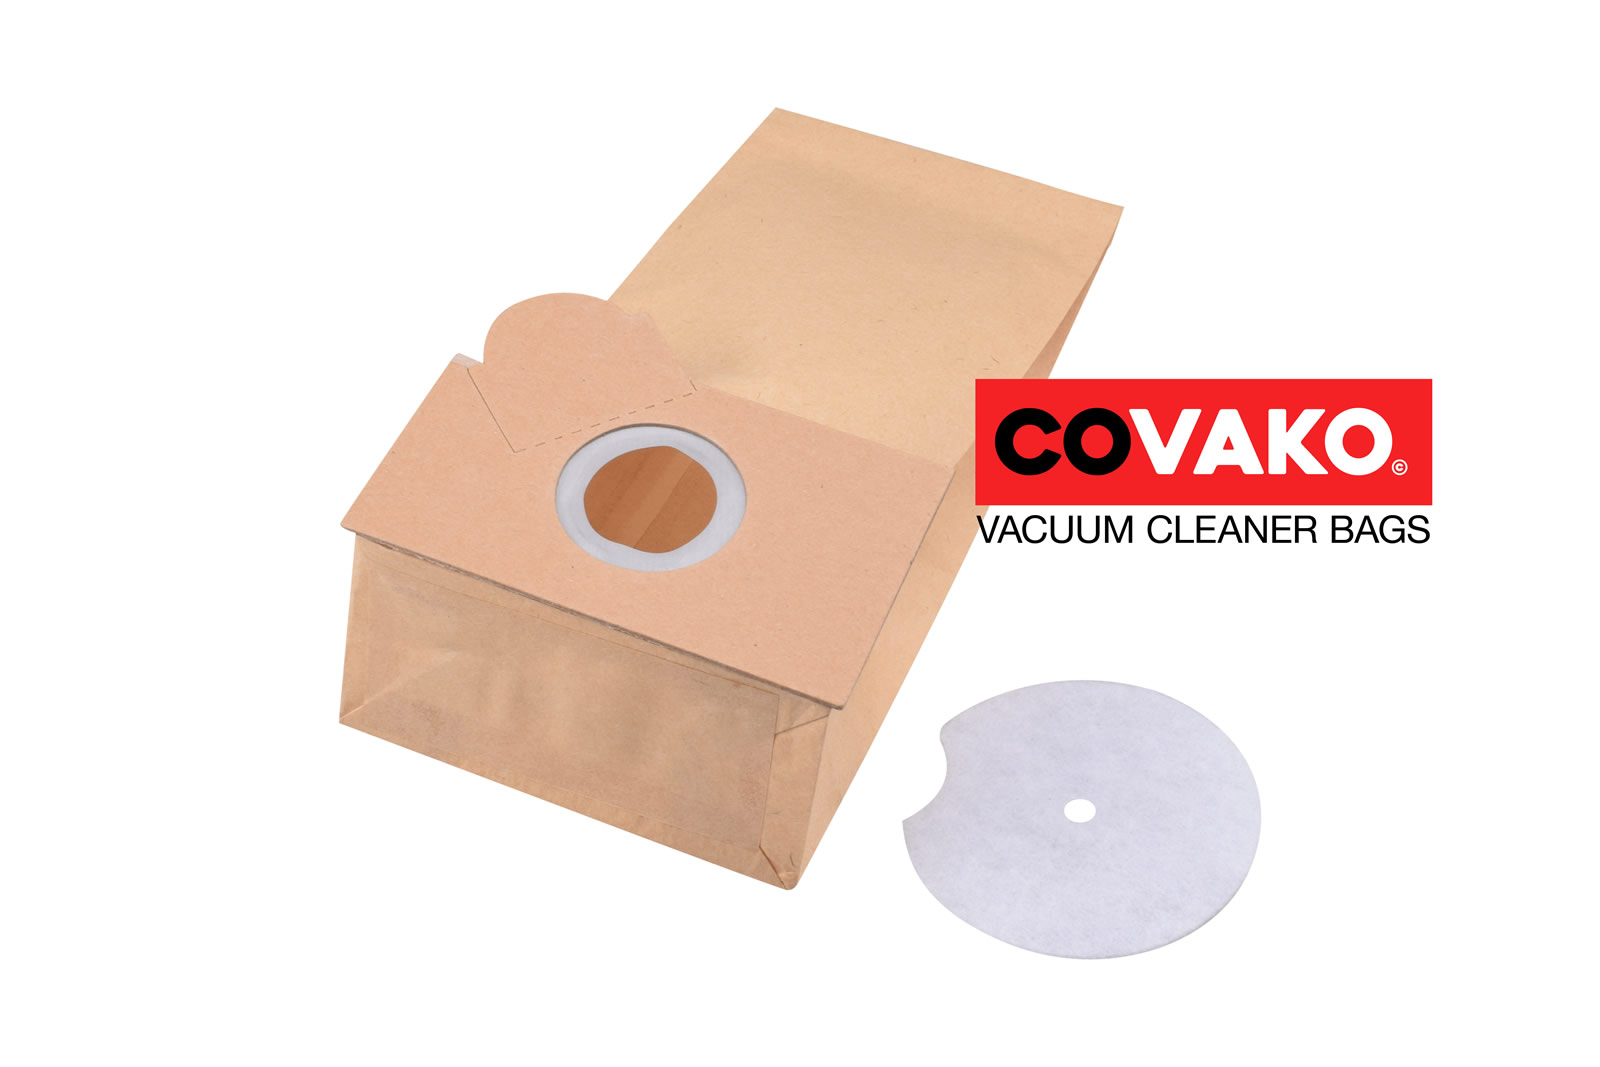 Fakir Combi 17-36 / Paper - Fakir vacuum cleaner bags